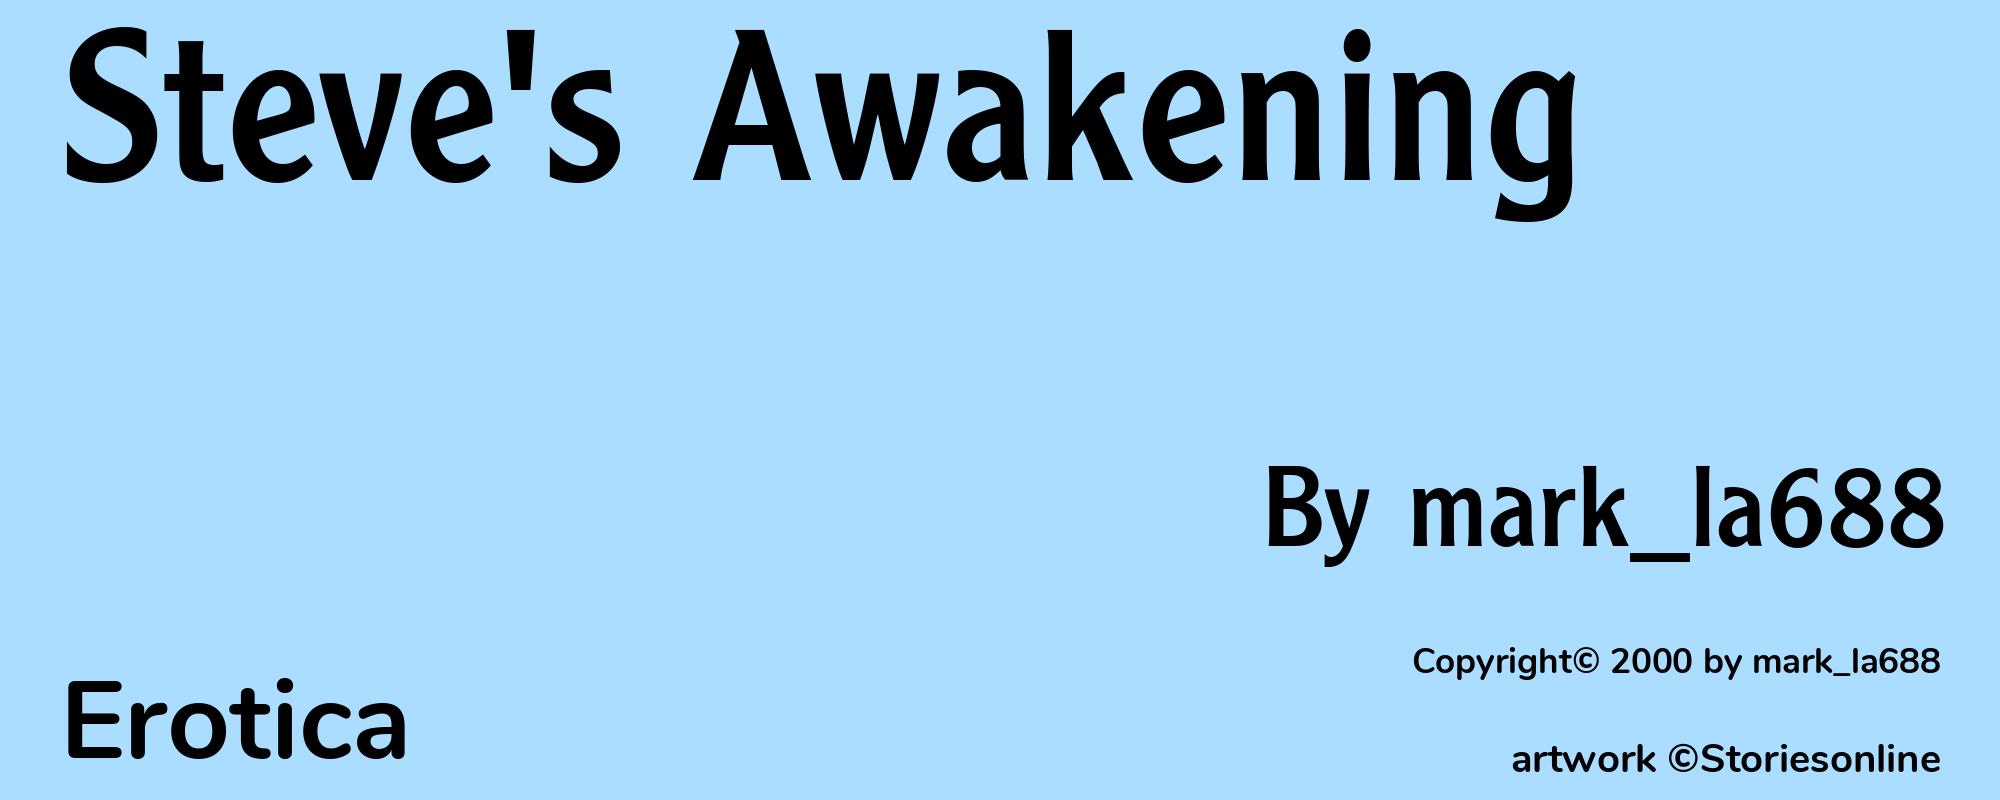 Steve's Awakening - Cover